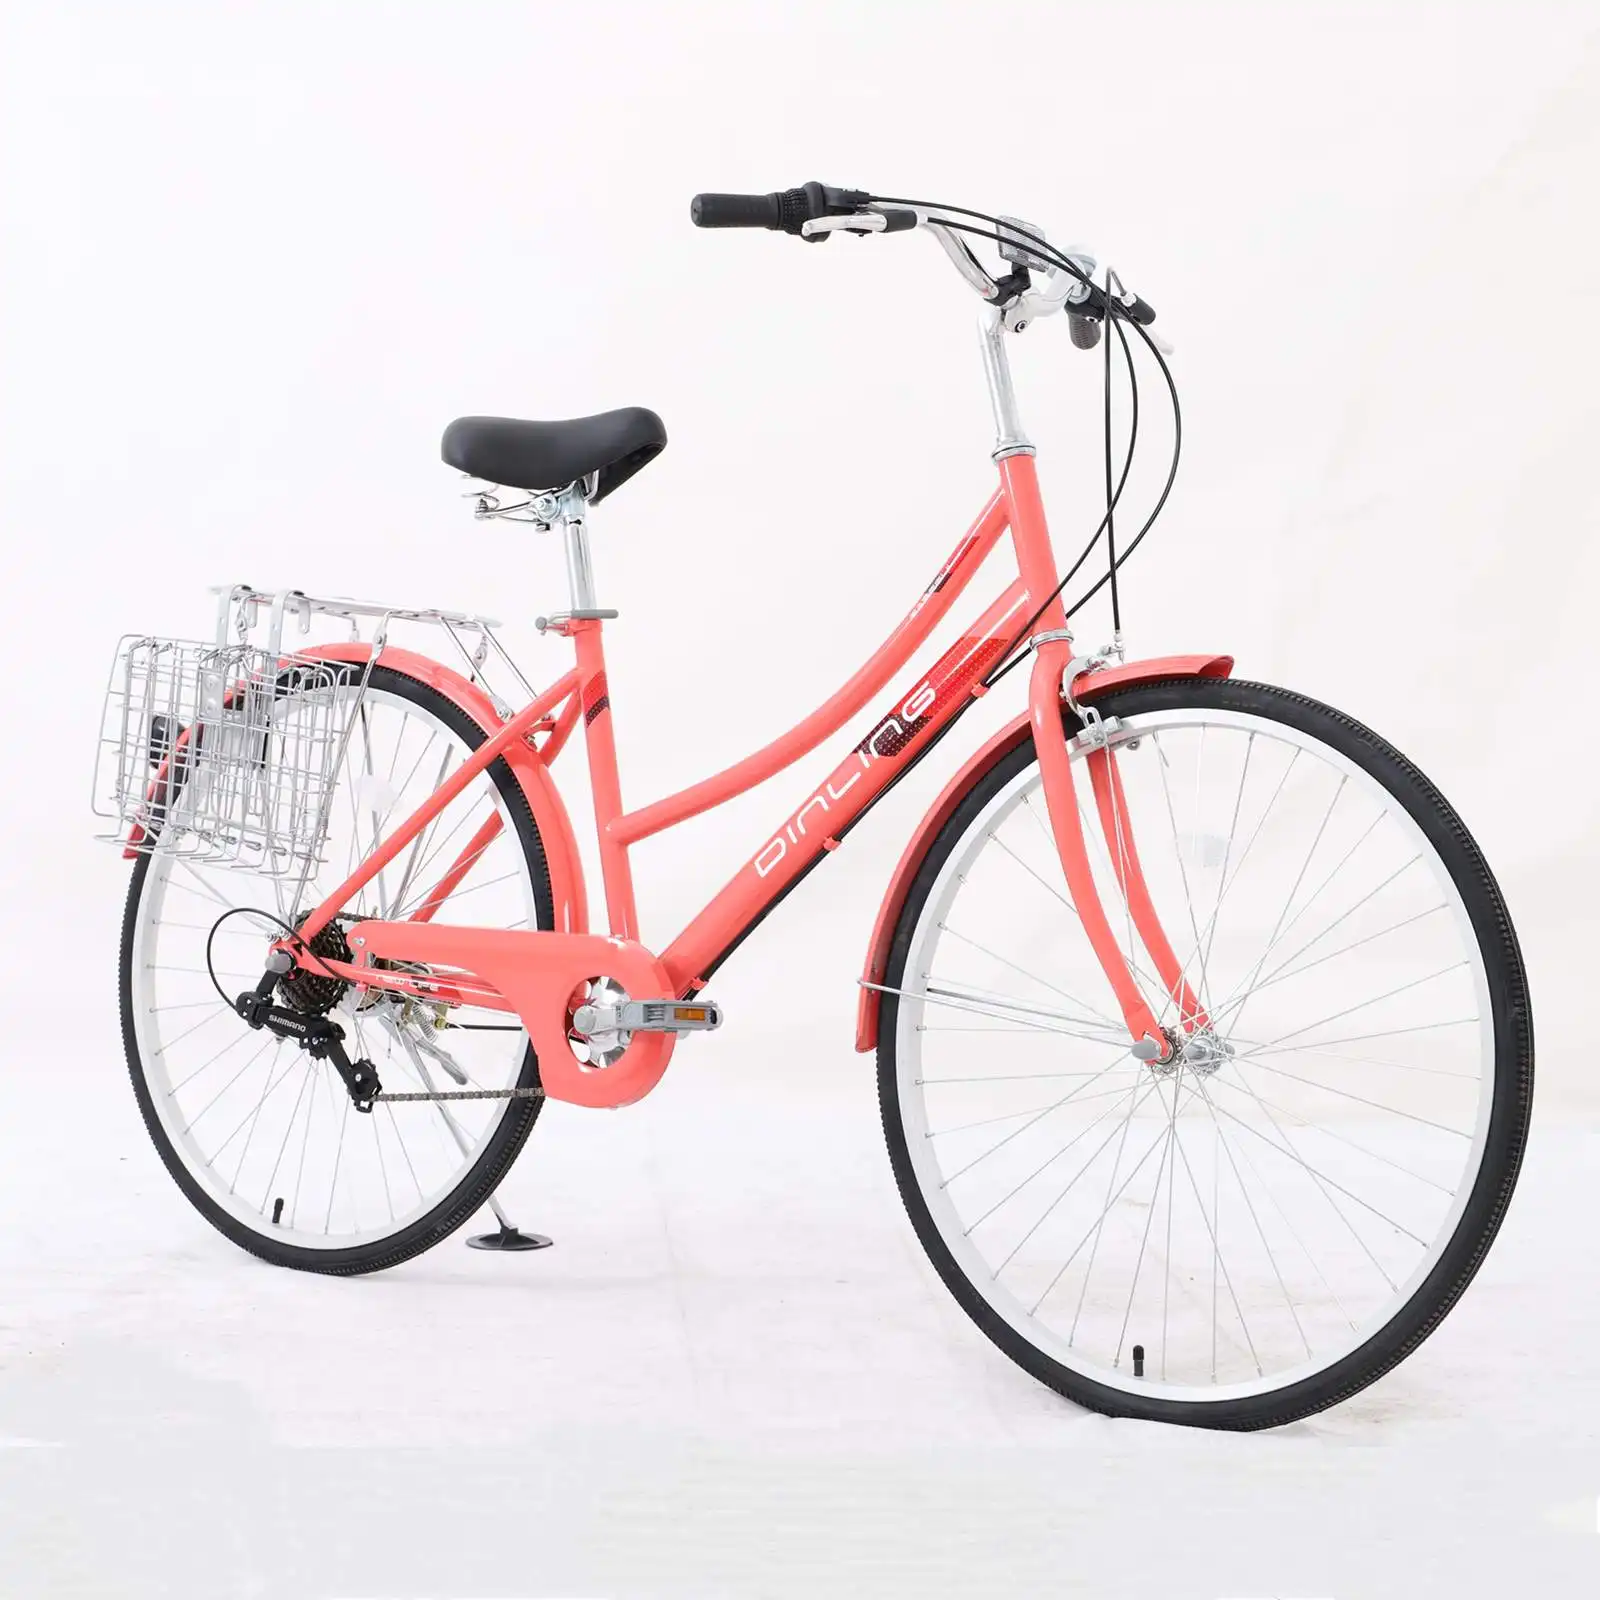 새로운 오리지널 레트로 여성 도시 자전거 공정한 가격의 빈티지 비치 크루저 자전거